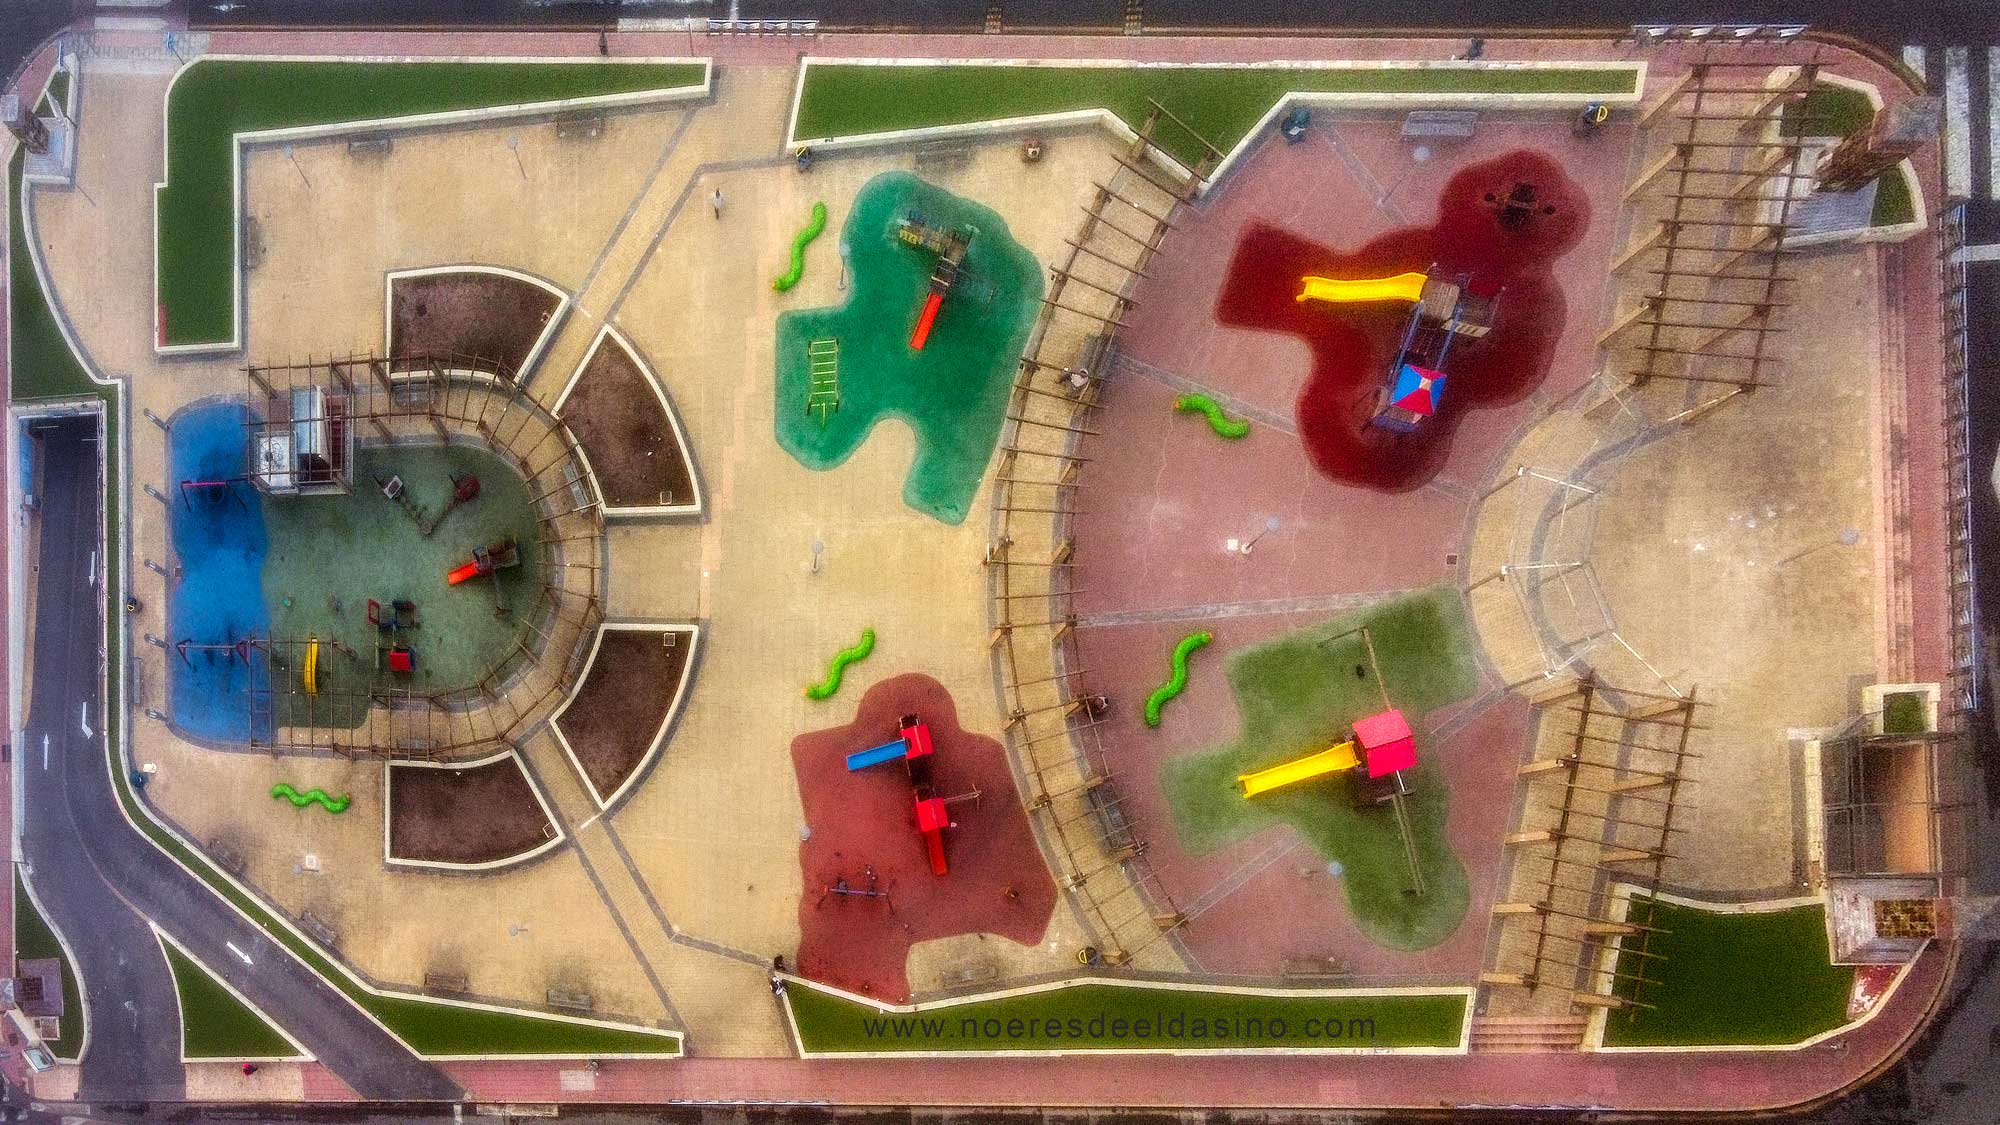 Próxima remodelación la Plaza del Zapatero de Elda, nuevo pavimento, nuevos juegos infantiles, arbolado y más sombra. | NEDEldaSN